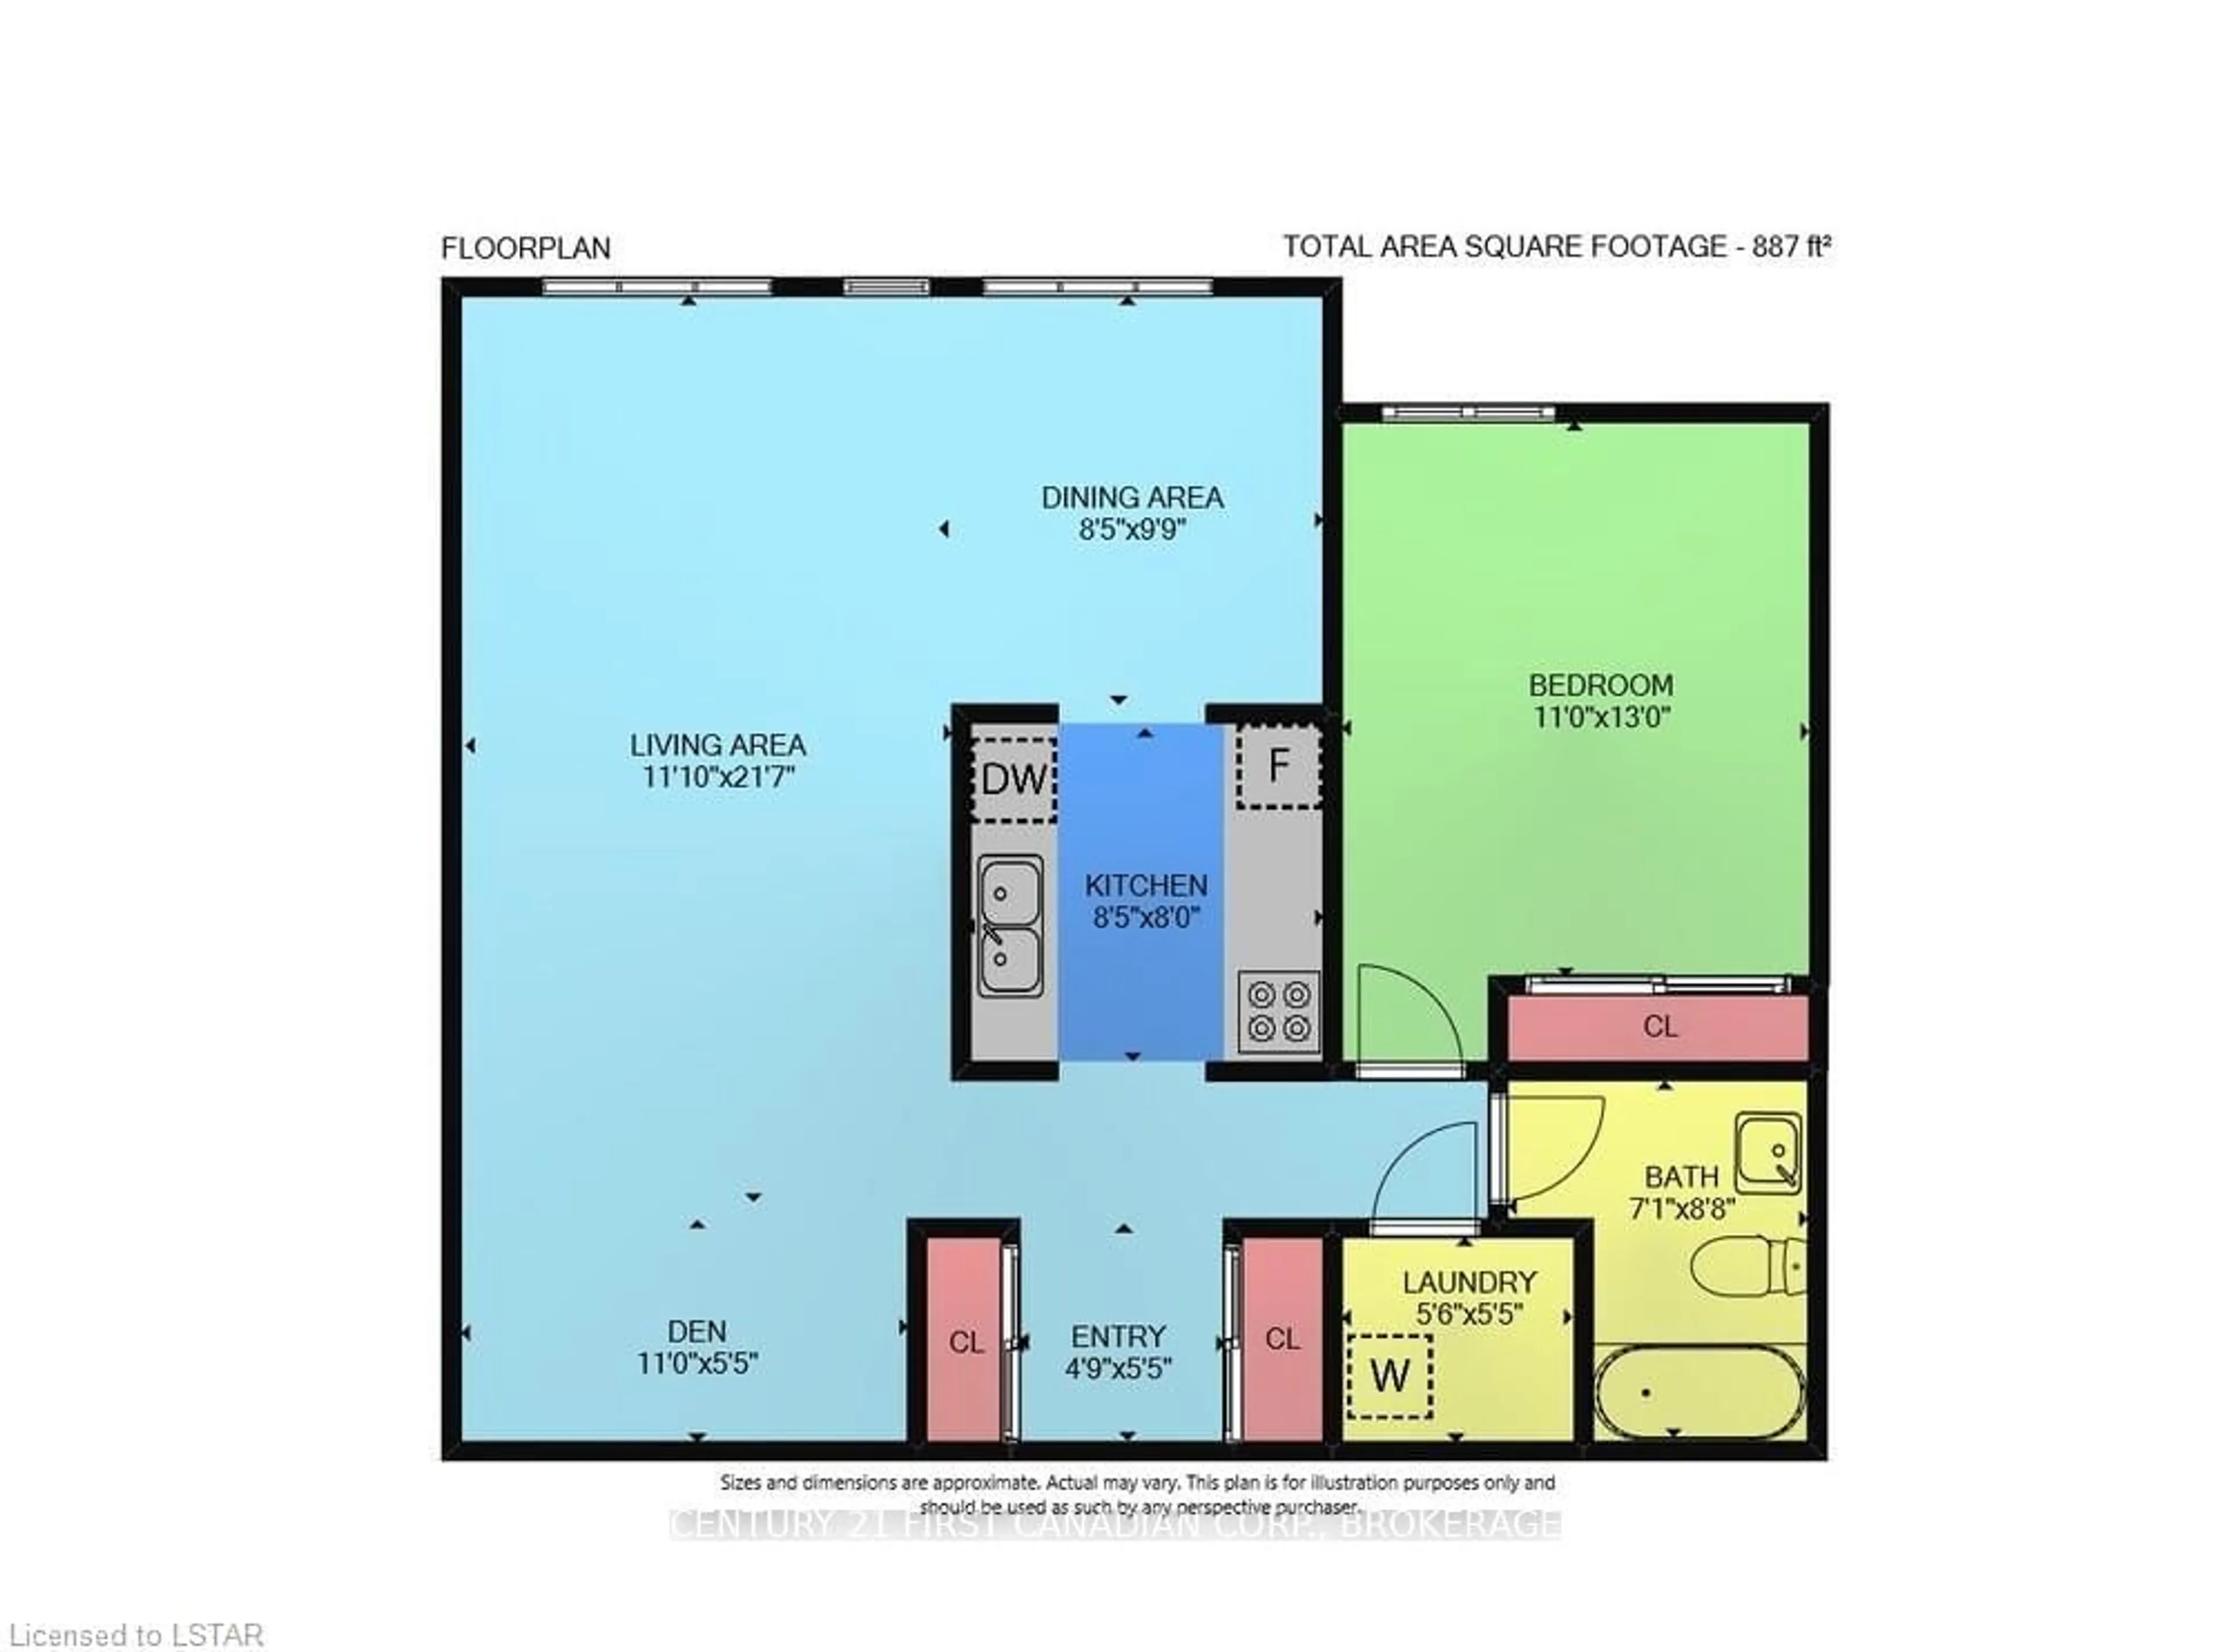 Floor plan for 570 Proudfoot Lane #812, London Ontario N6H 4Z1